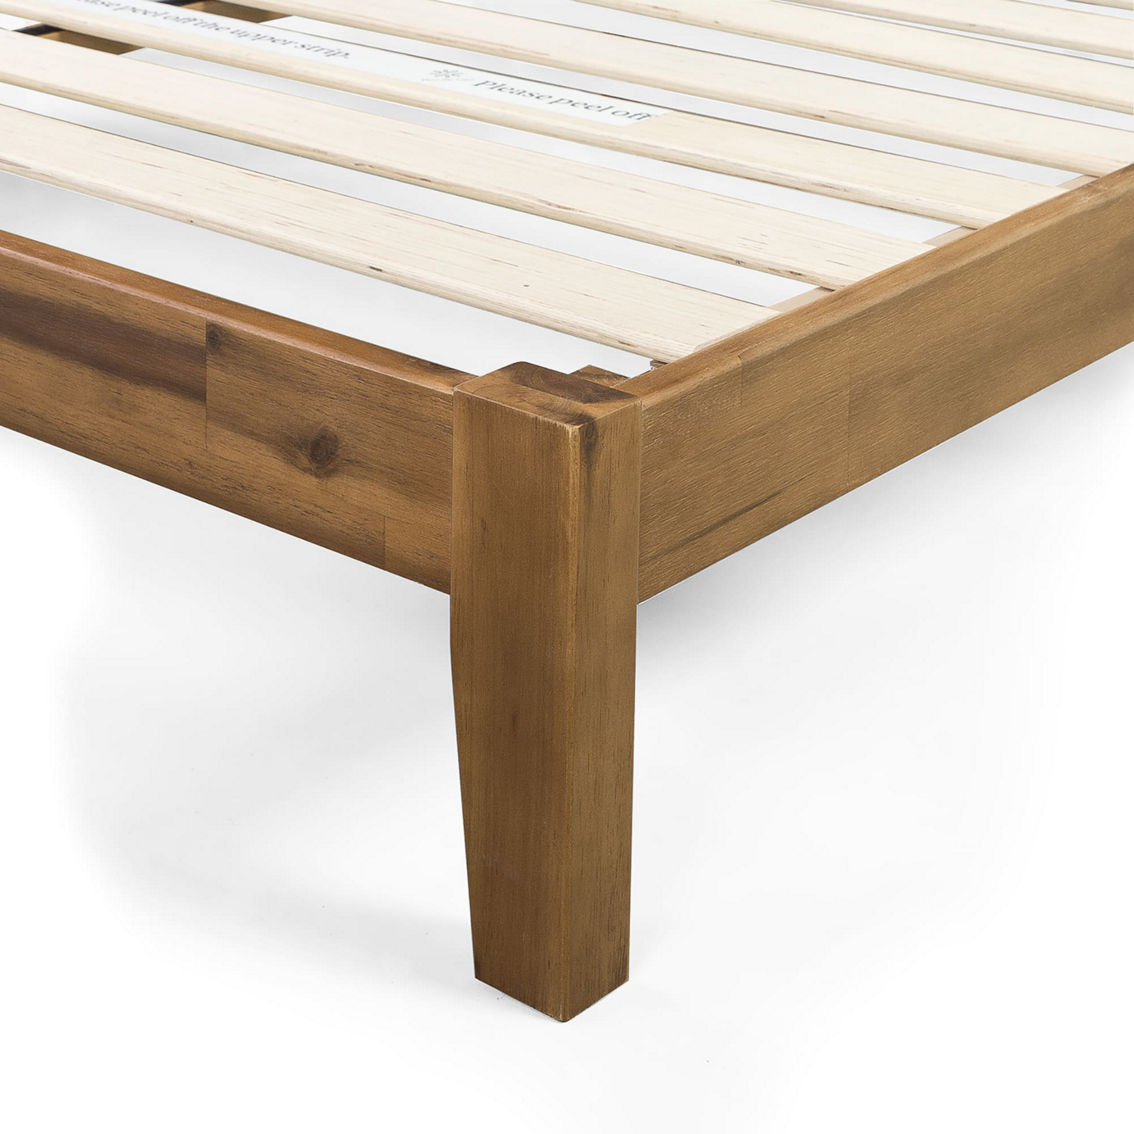 Zinus Wood  Platform Bed Frame - Image 4 of 4